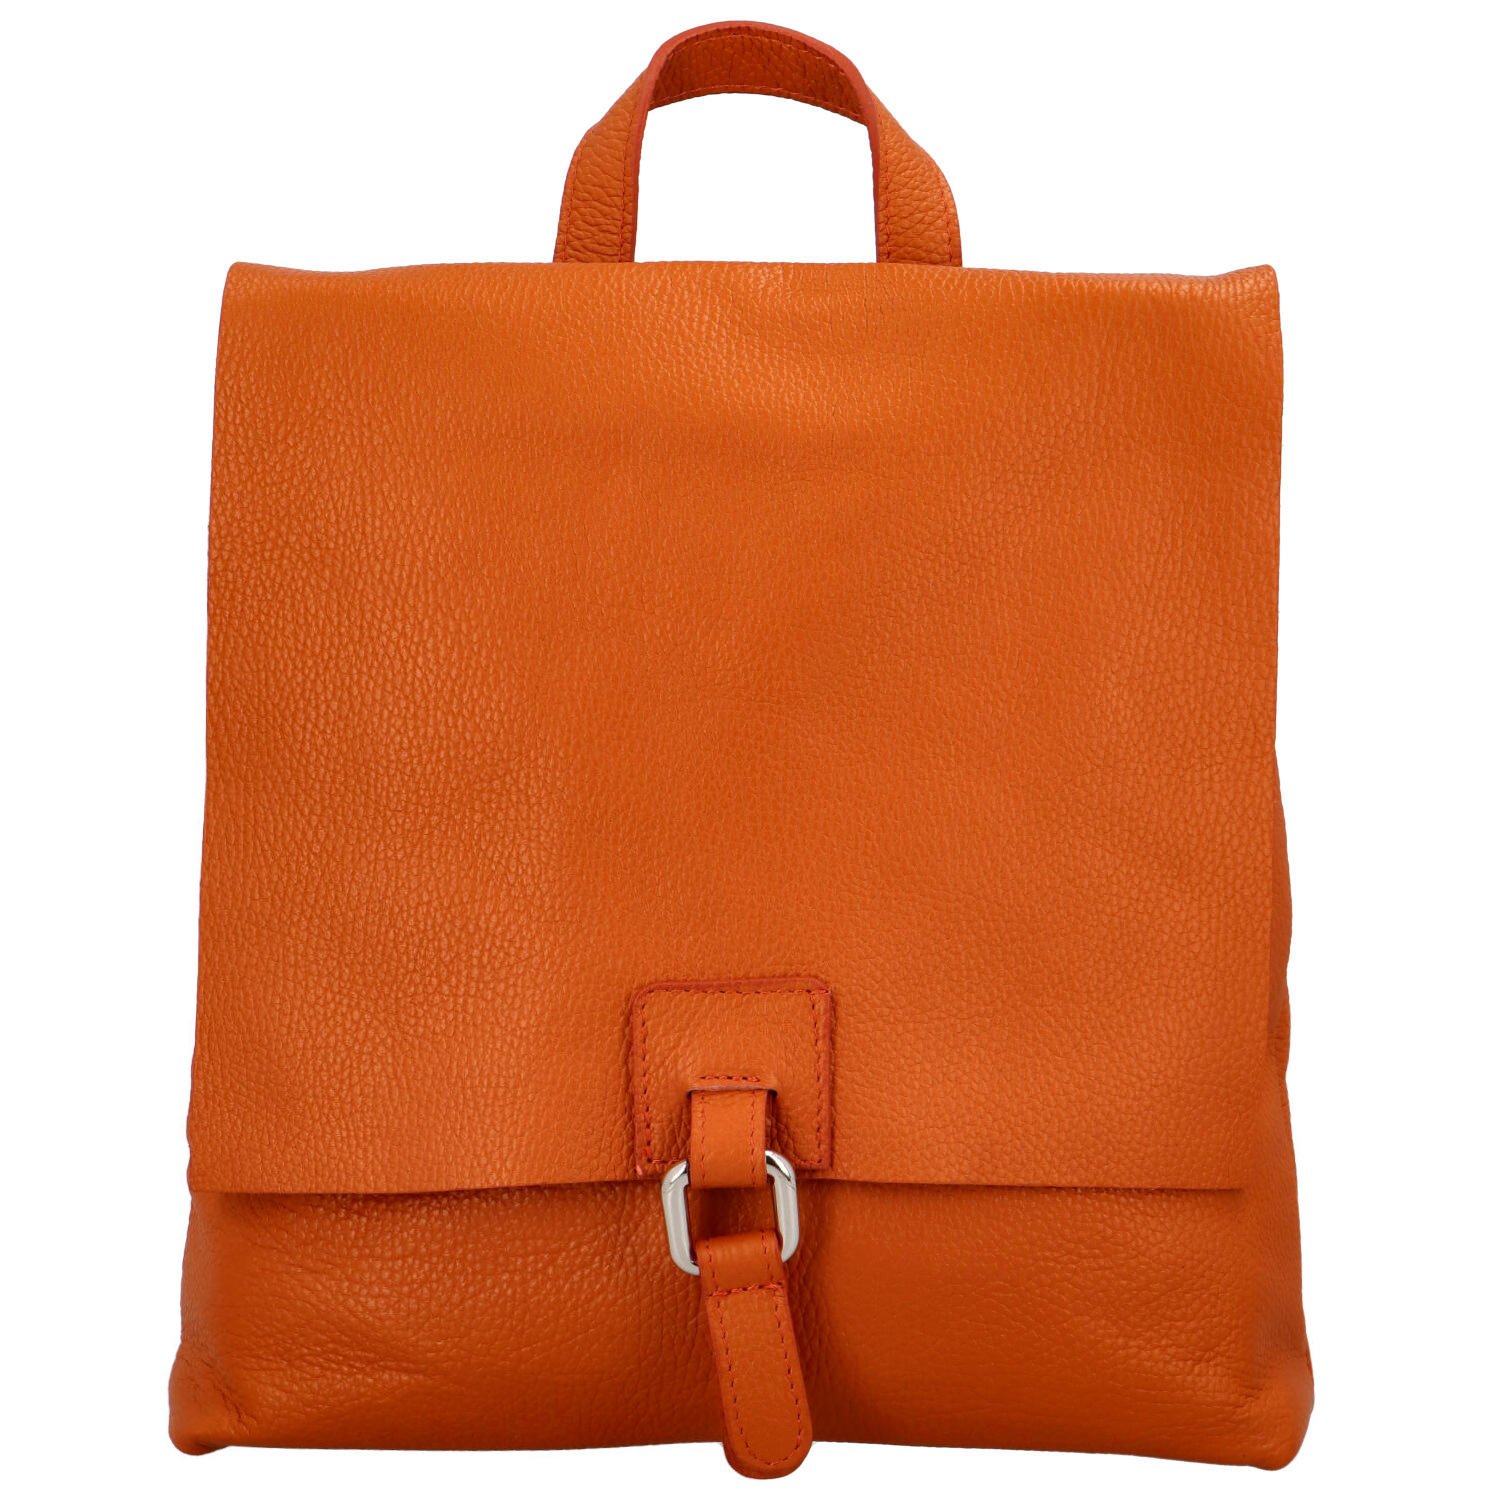 Levně Dámský kožený batůžek/kabelka oranžový - Delami Vera Pelle Francesco